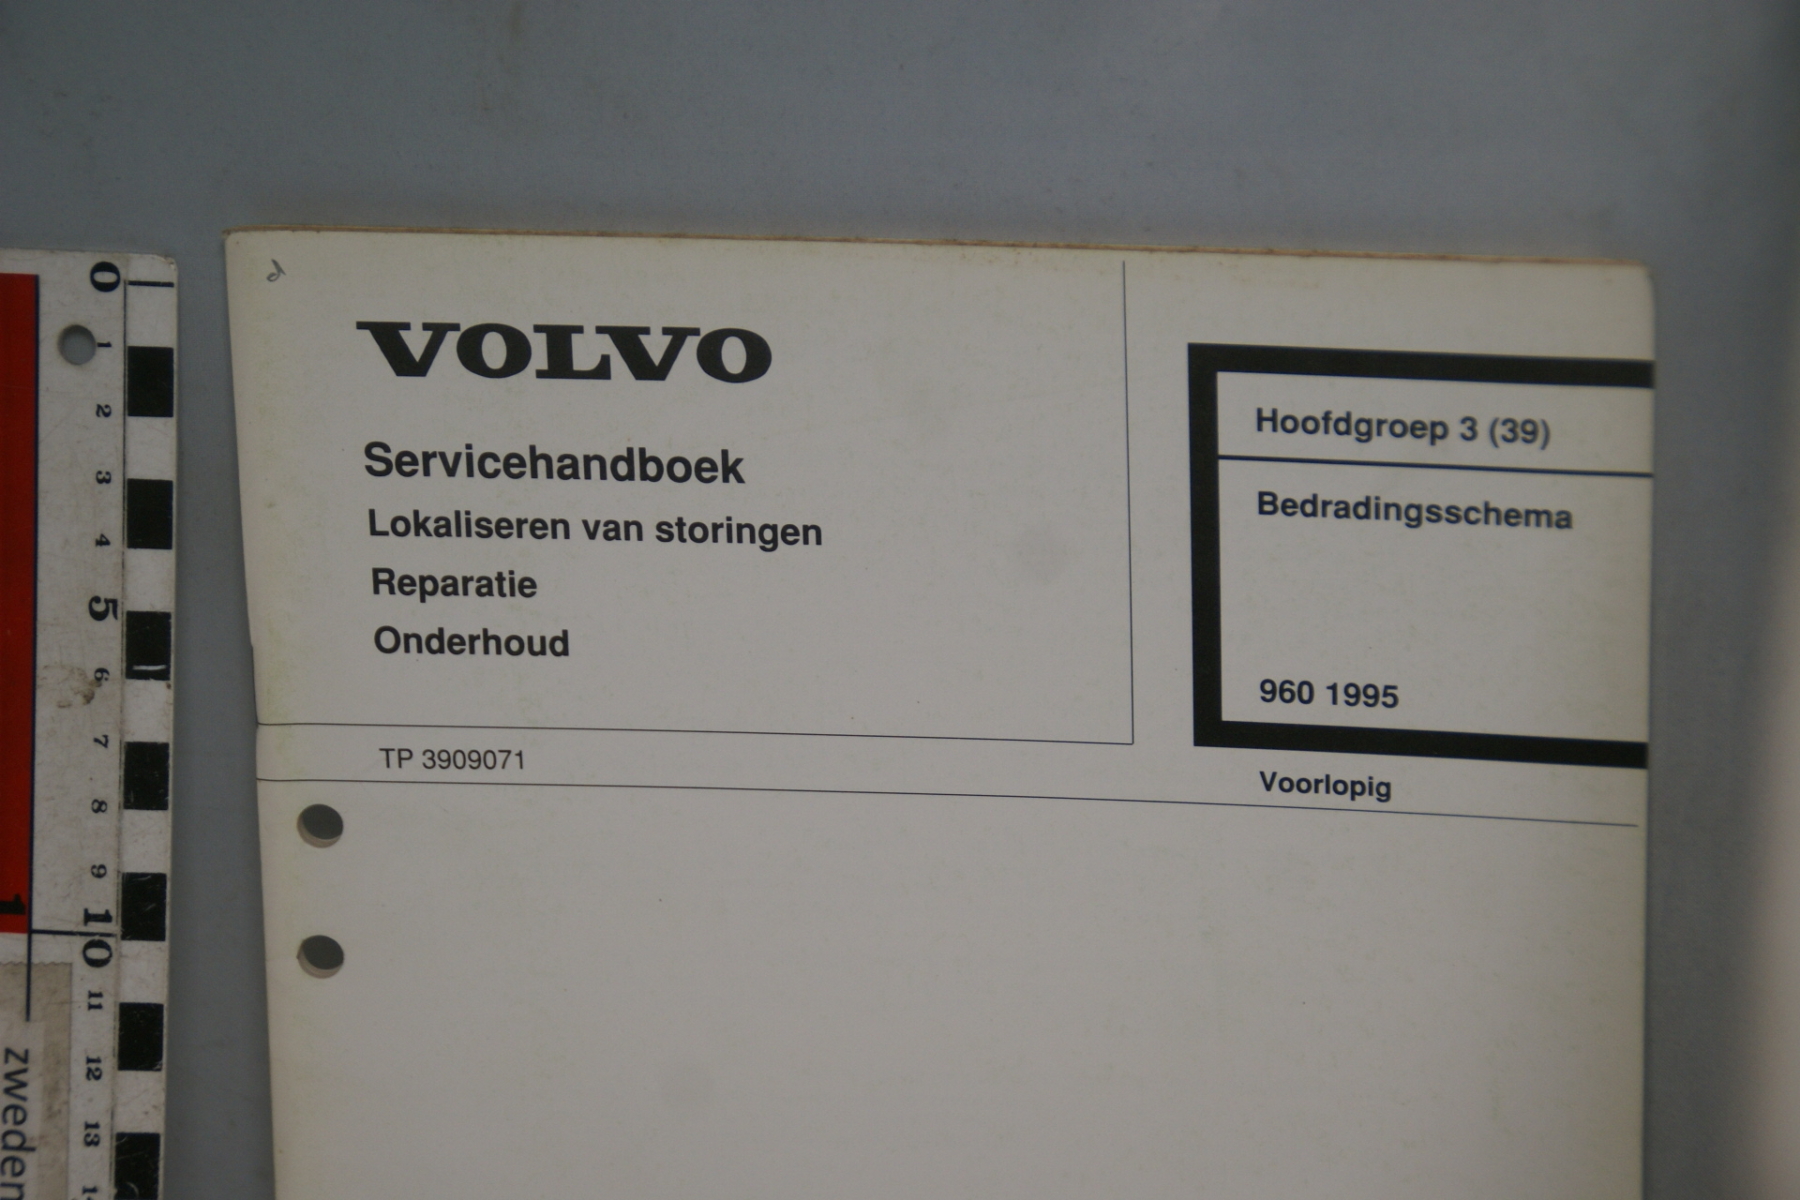 DSC06161 1994 servicehandboek bedradingsschema 3(39), origineel Volvo 960,  1 van 450 nr TP39090